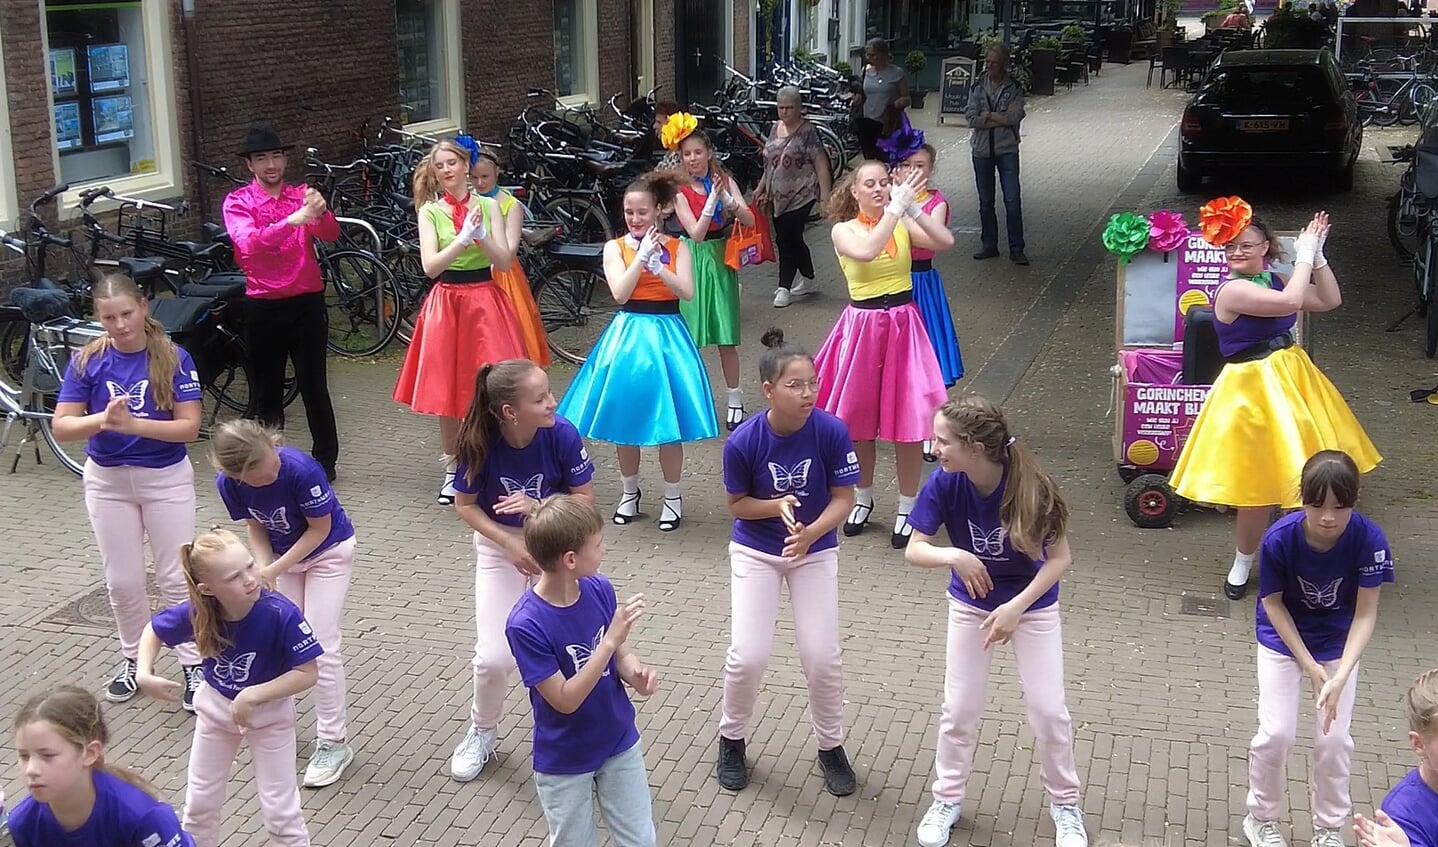 Wensbonfeest in binnenstad
Dansgroepen van Anja Rietveld